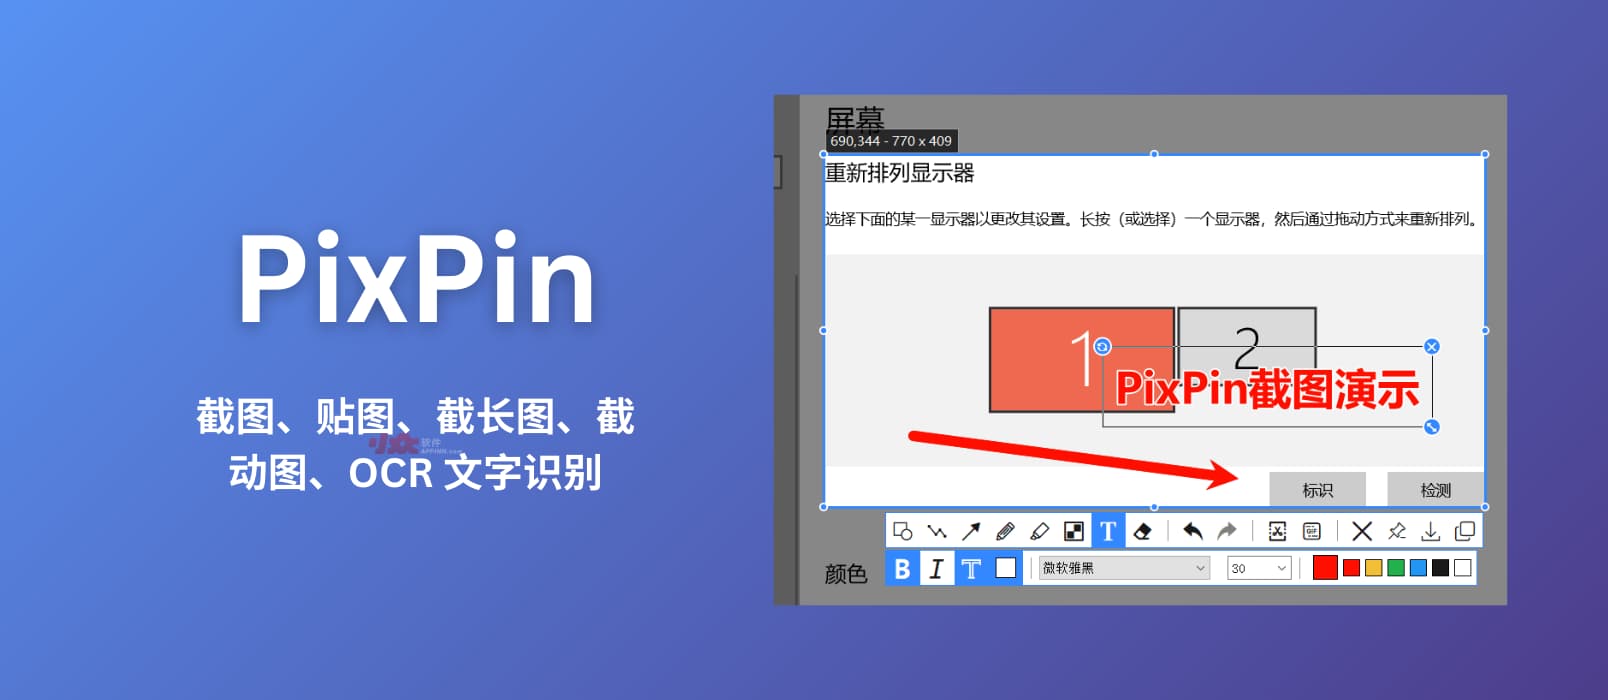 PixPin - 新截图工具：贴图、截长图、截动图、OCR 文字识别[Windows]